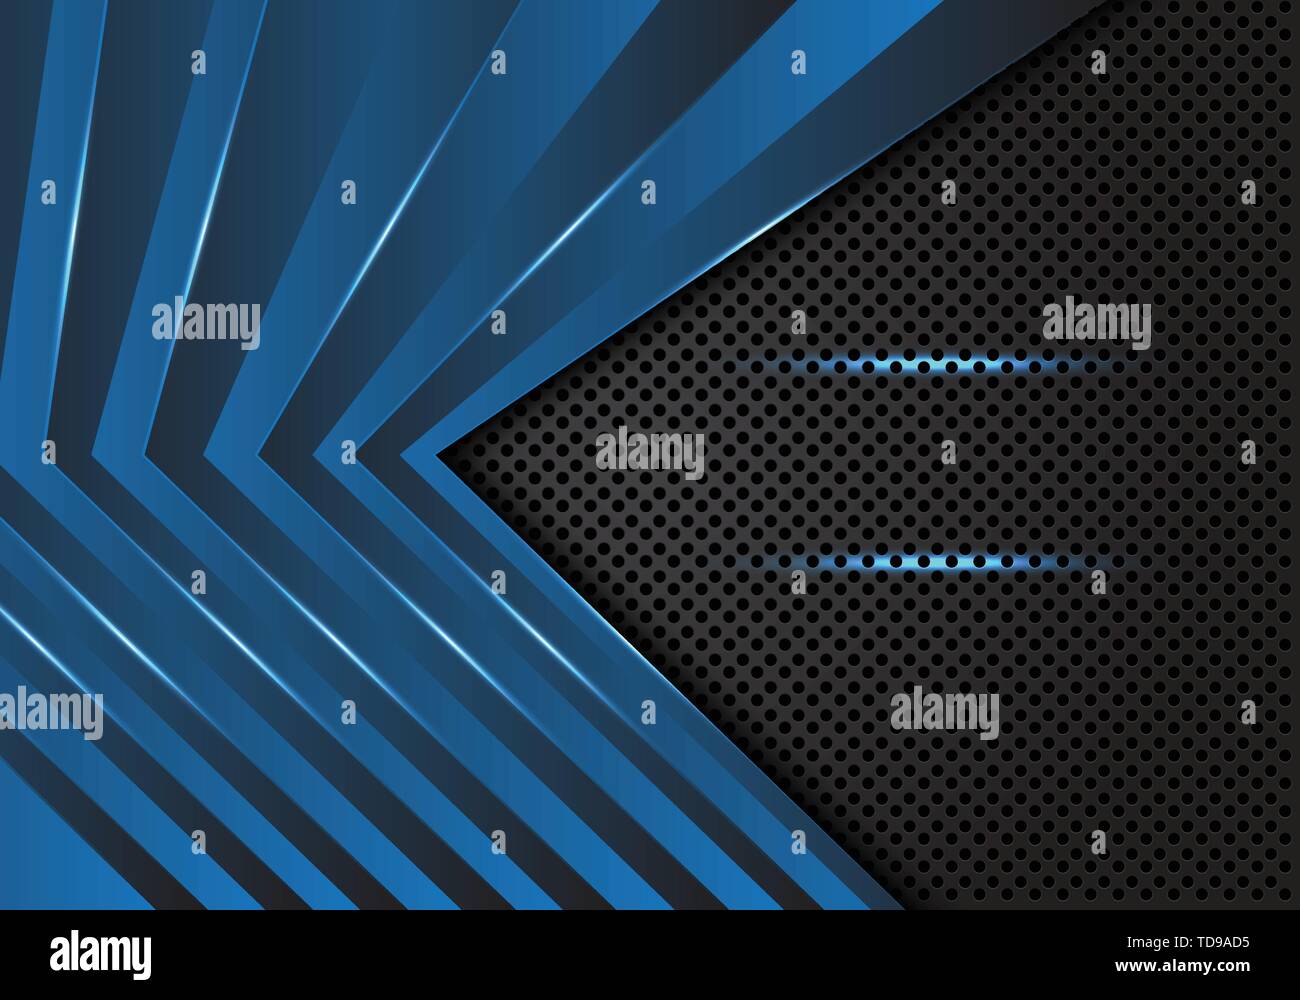 Abstrakt Blau Pfeil Muster auf dunklen grauen Kreis mesh Design moderne futuristischen Hintergrund Vector Illustration. Stock Vektor